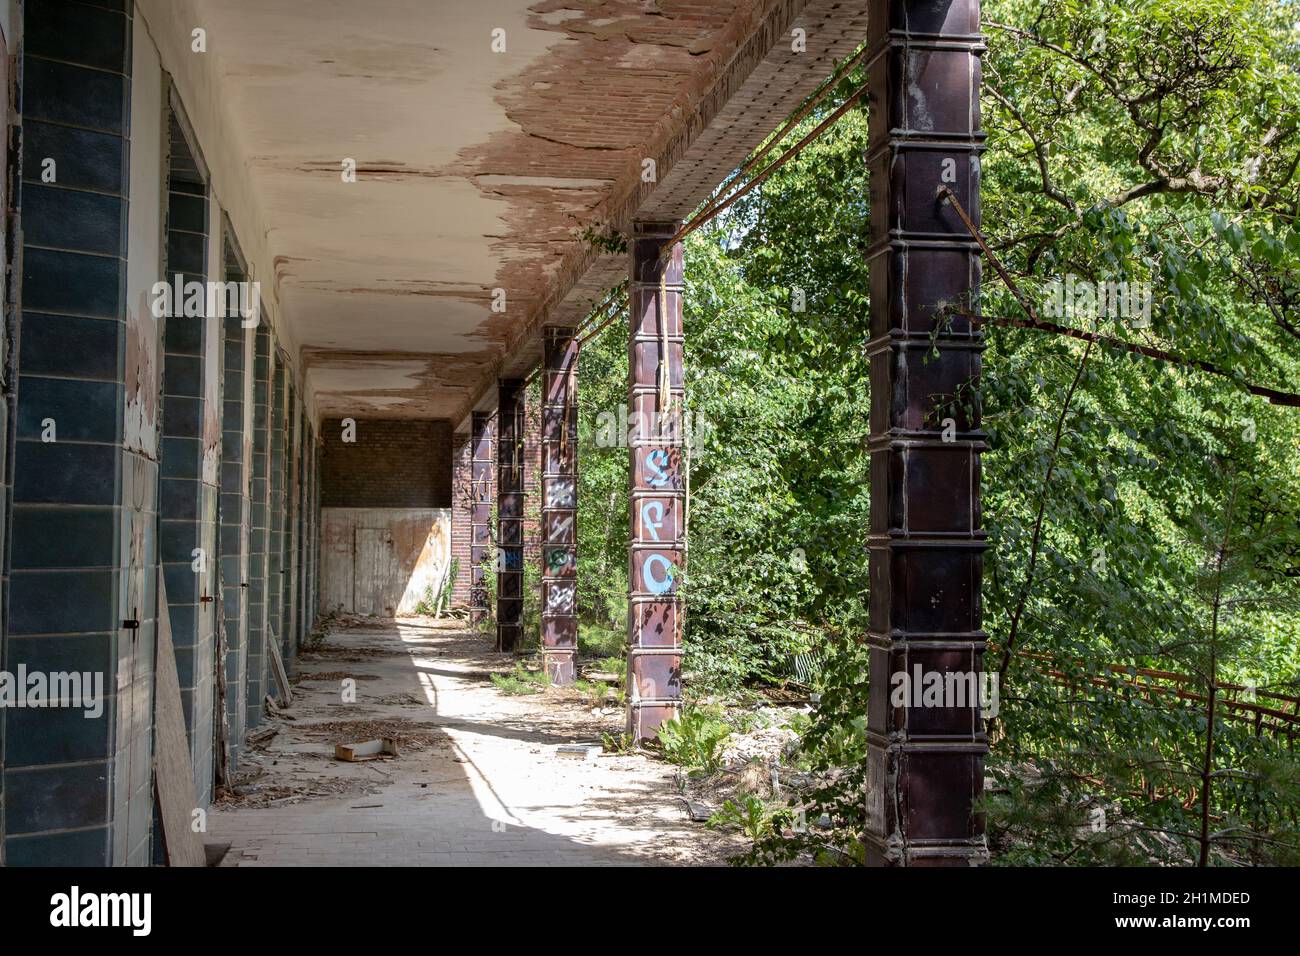 BEELITZ, ALLEMAGNE - 30 JUIN 2020 : terrasses allongées pour les patients. La chirurgie est le bâtiment le plus moderne des sanatoriums abandonnés et montre de façon impressionnante Banque D'Images